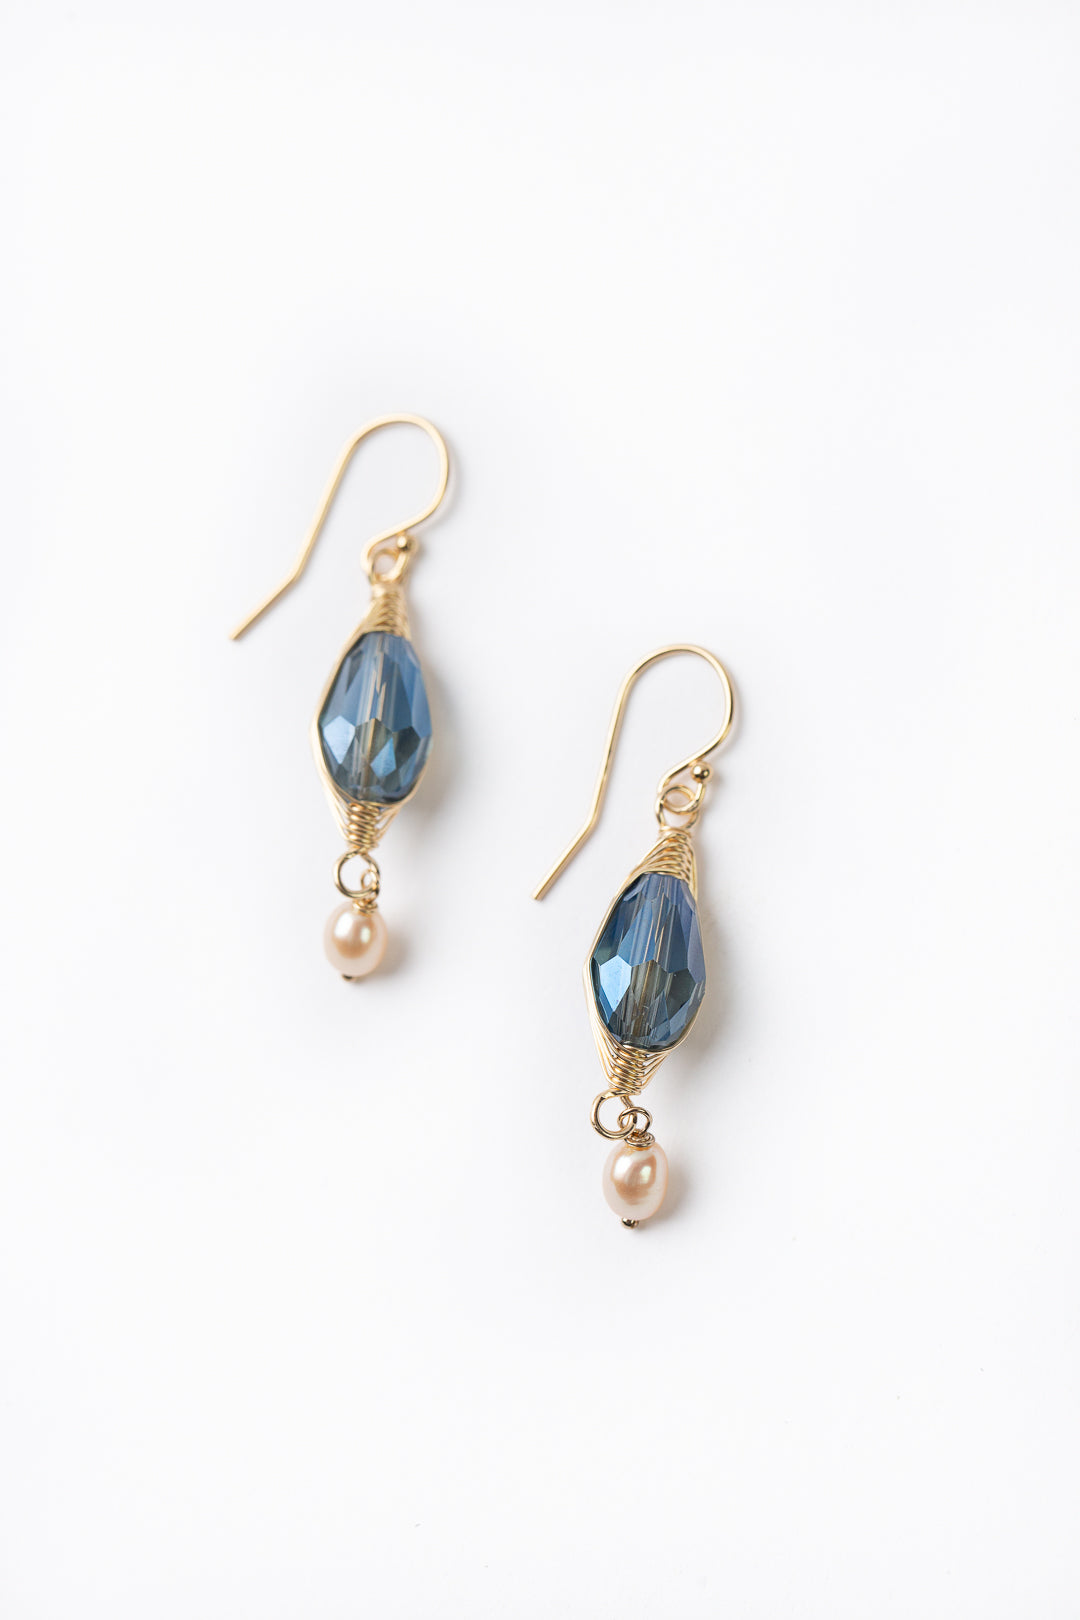 Starry Night Freshwater Pearl With Crystal Herringbone Earrings